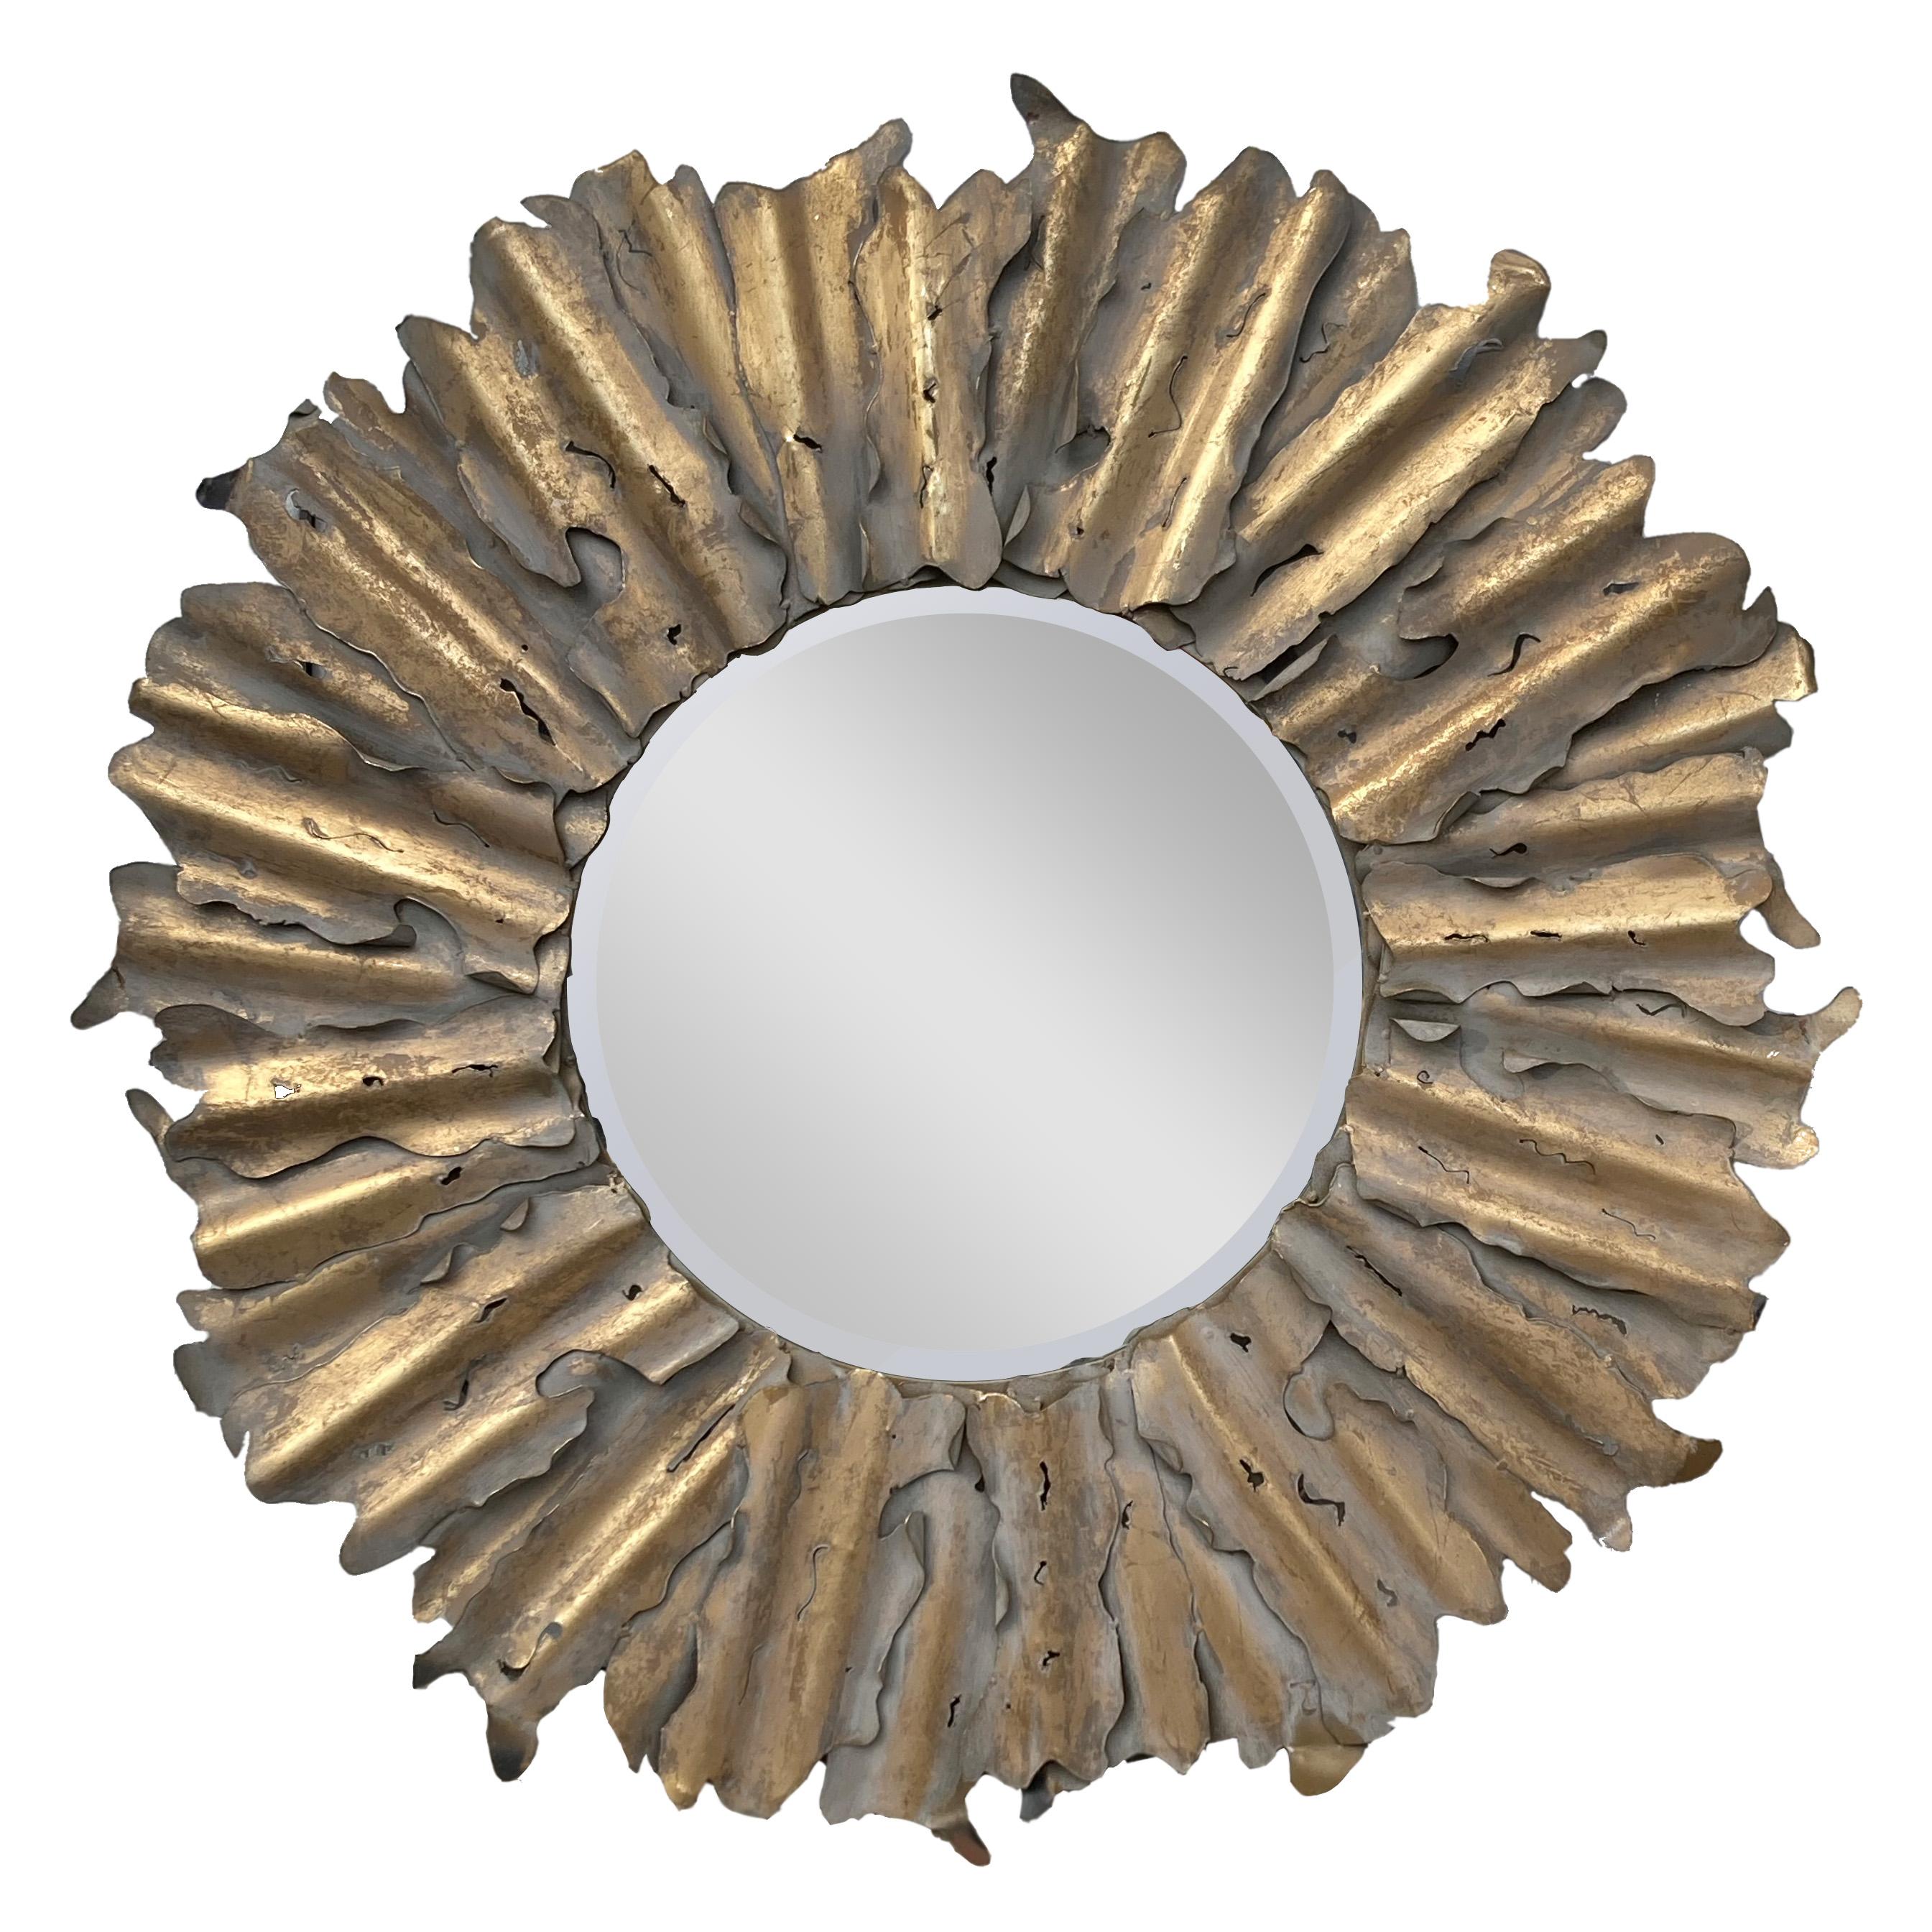 Supercooler Sonnenschliff-Spiegel aus Stahl im Brutalismus-Stil.  Ein ungewöhnlicher Fund: Der geschnittene Stahl wurde vergoldet und dann mit einer Tünche überzogen, die dann bis zur Vergoldung durchgerieben wurde.  Es ist sehr 